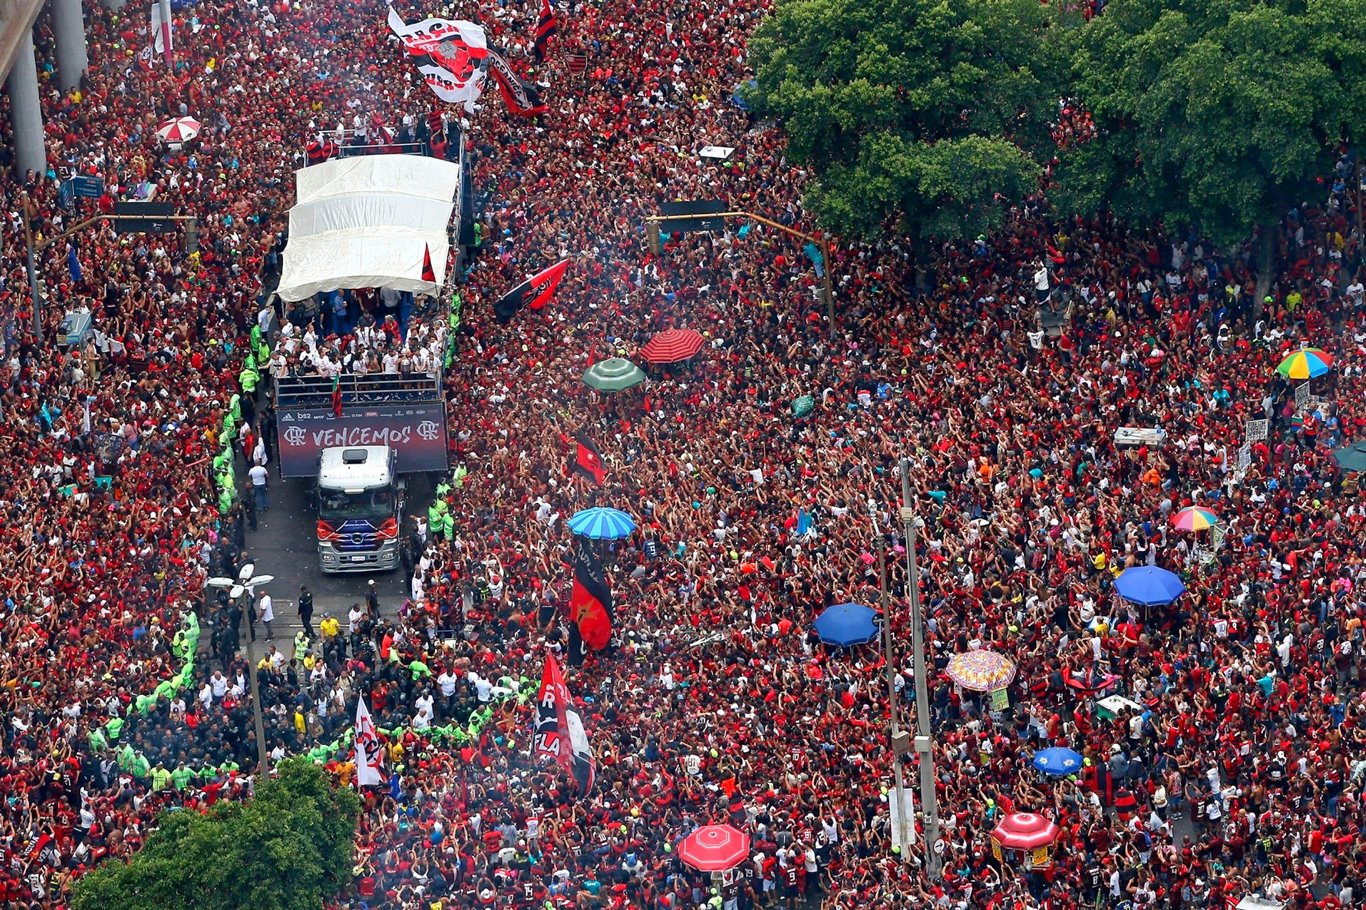 Tri da Libertadores do Flamengo parece com o tri do São Paulo e